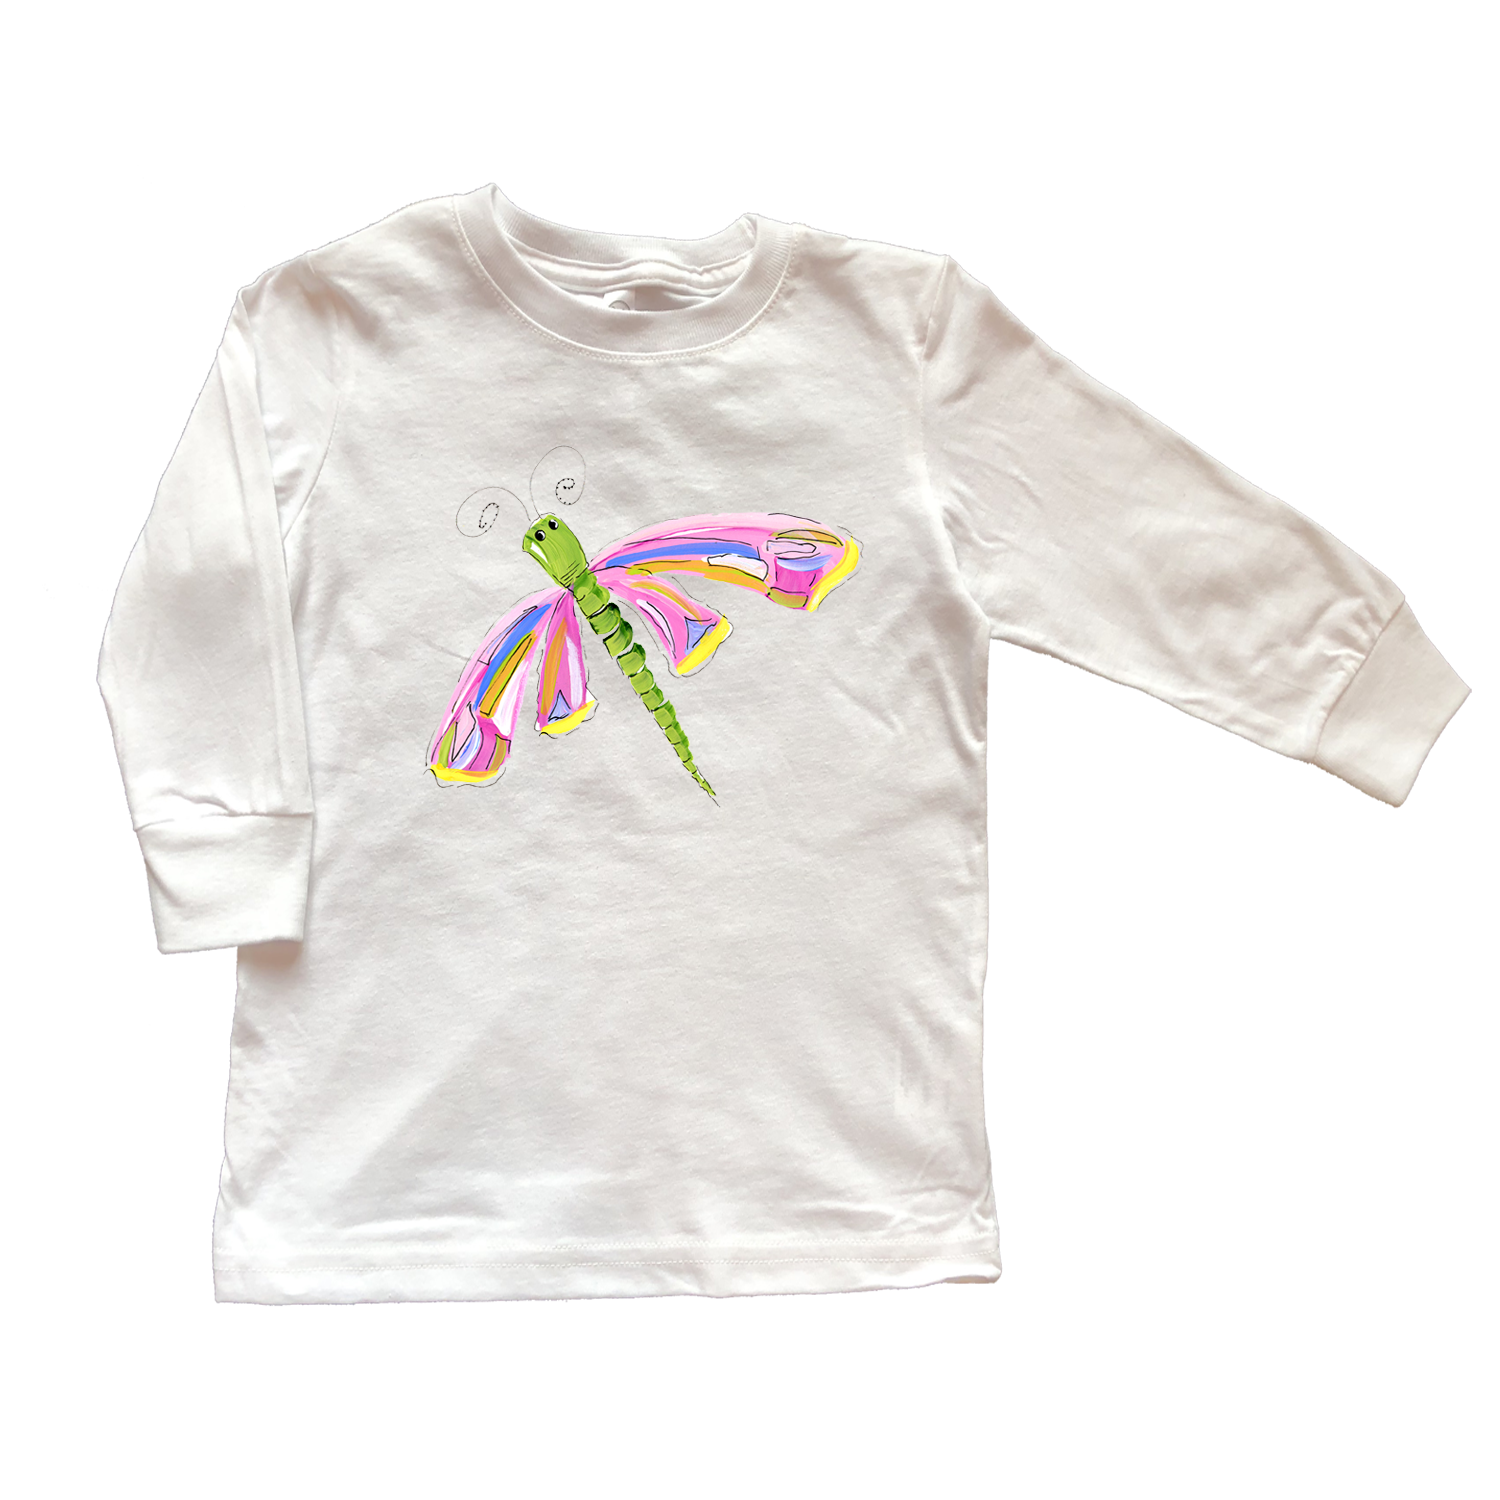 Cotton Tee Shirt Long Sleeve 775 De De the Dragonfly